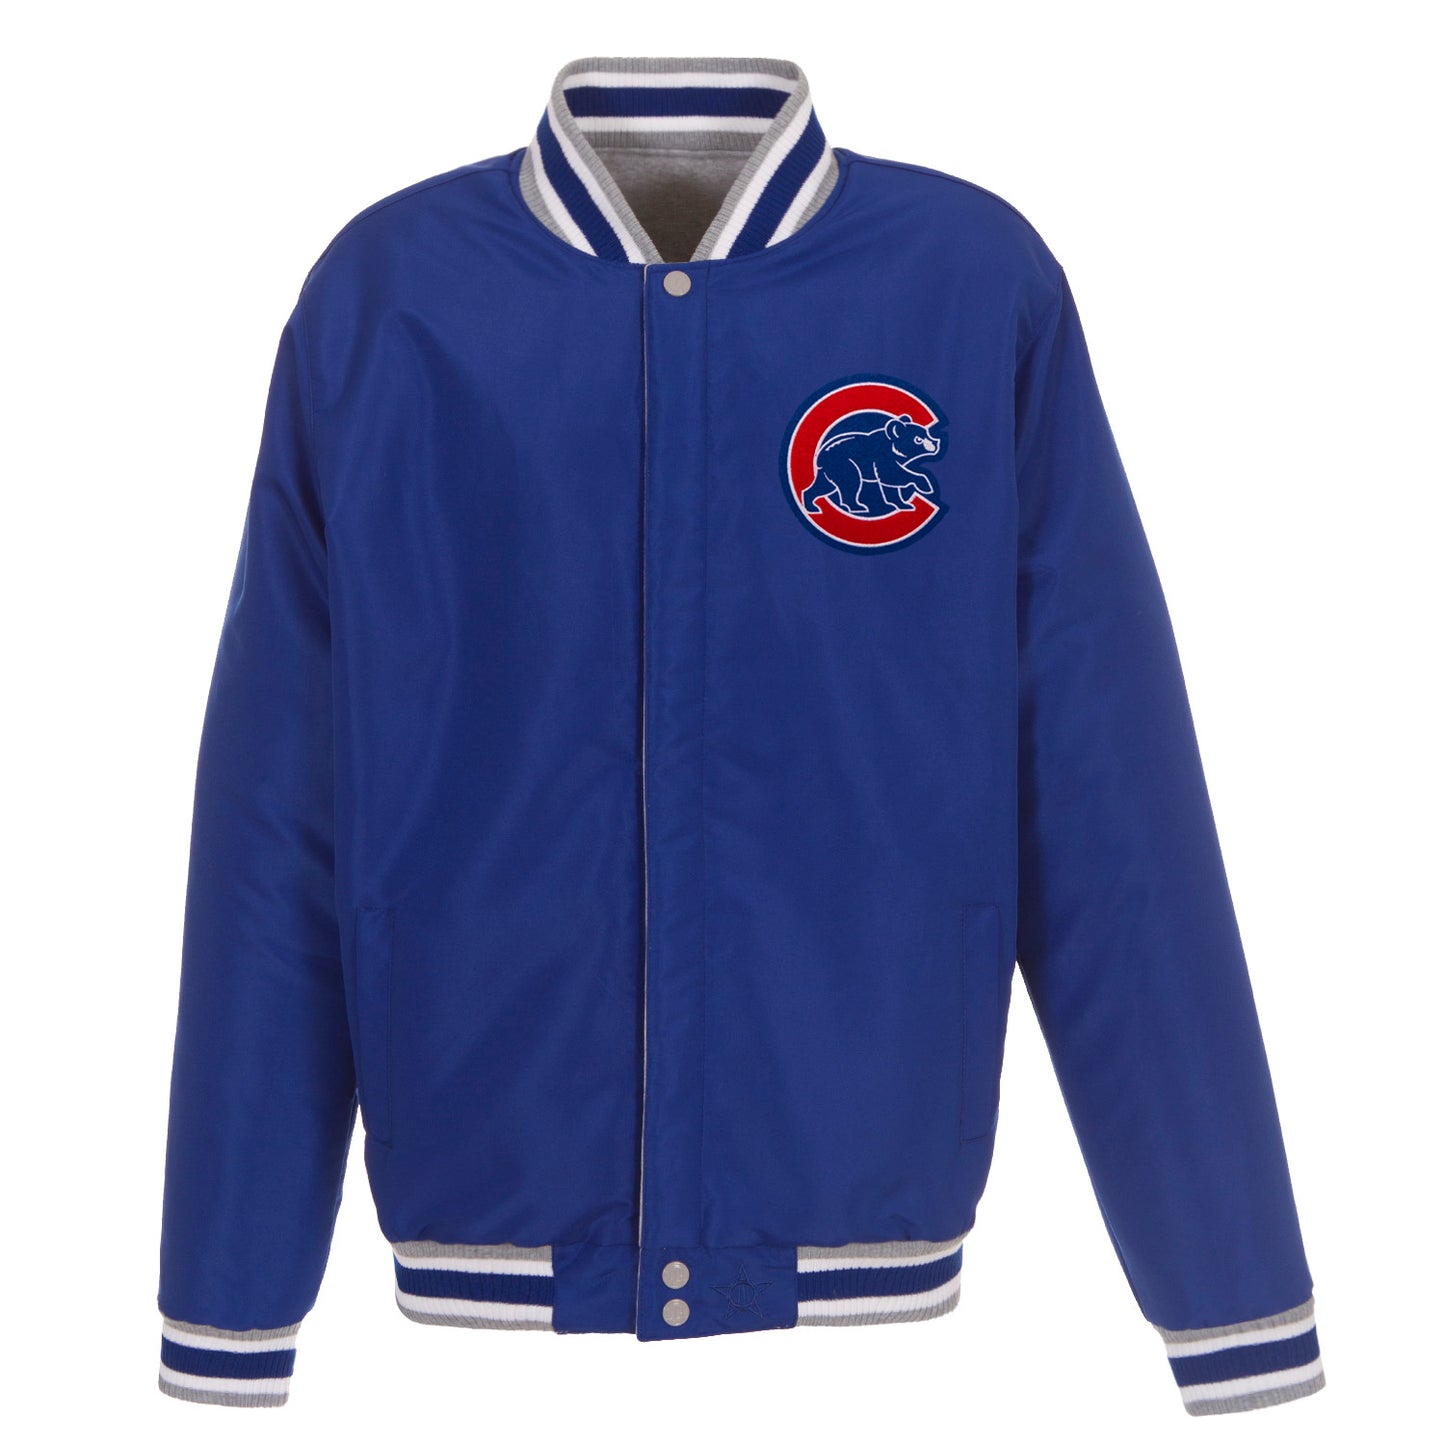 Chicago Cubs Reversible Fleece Jacket